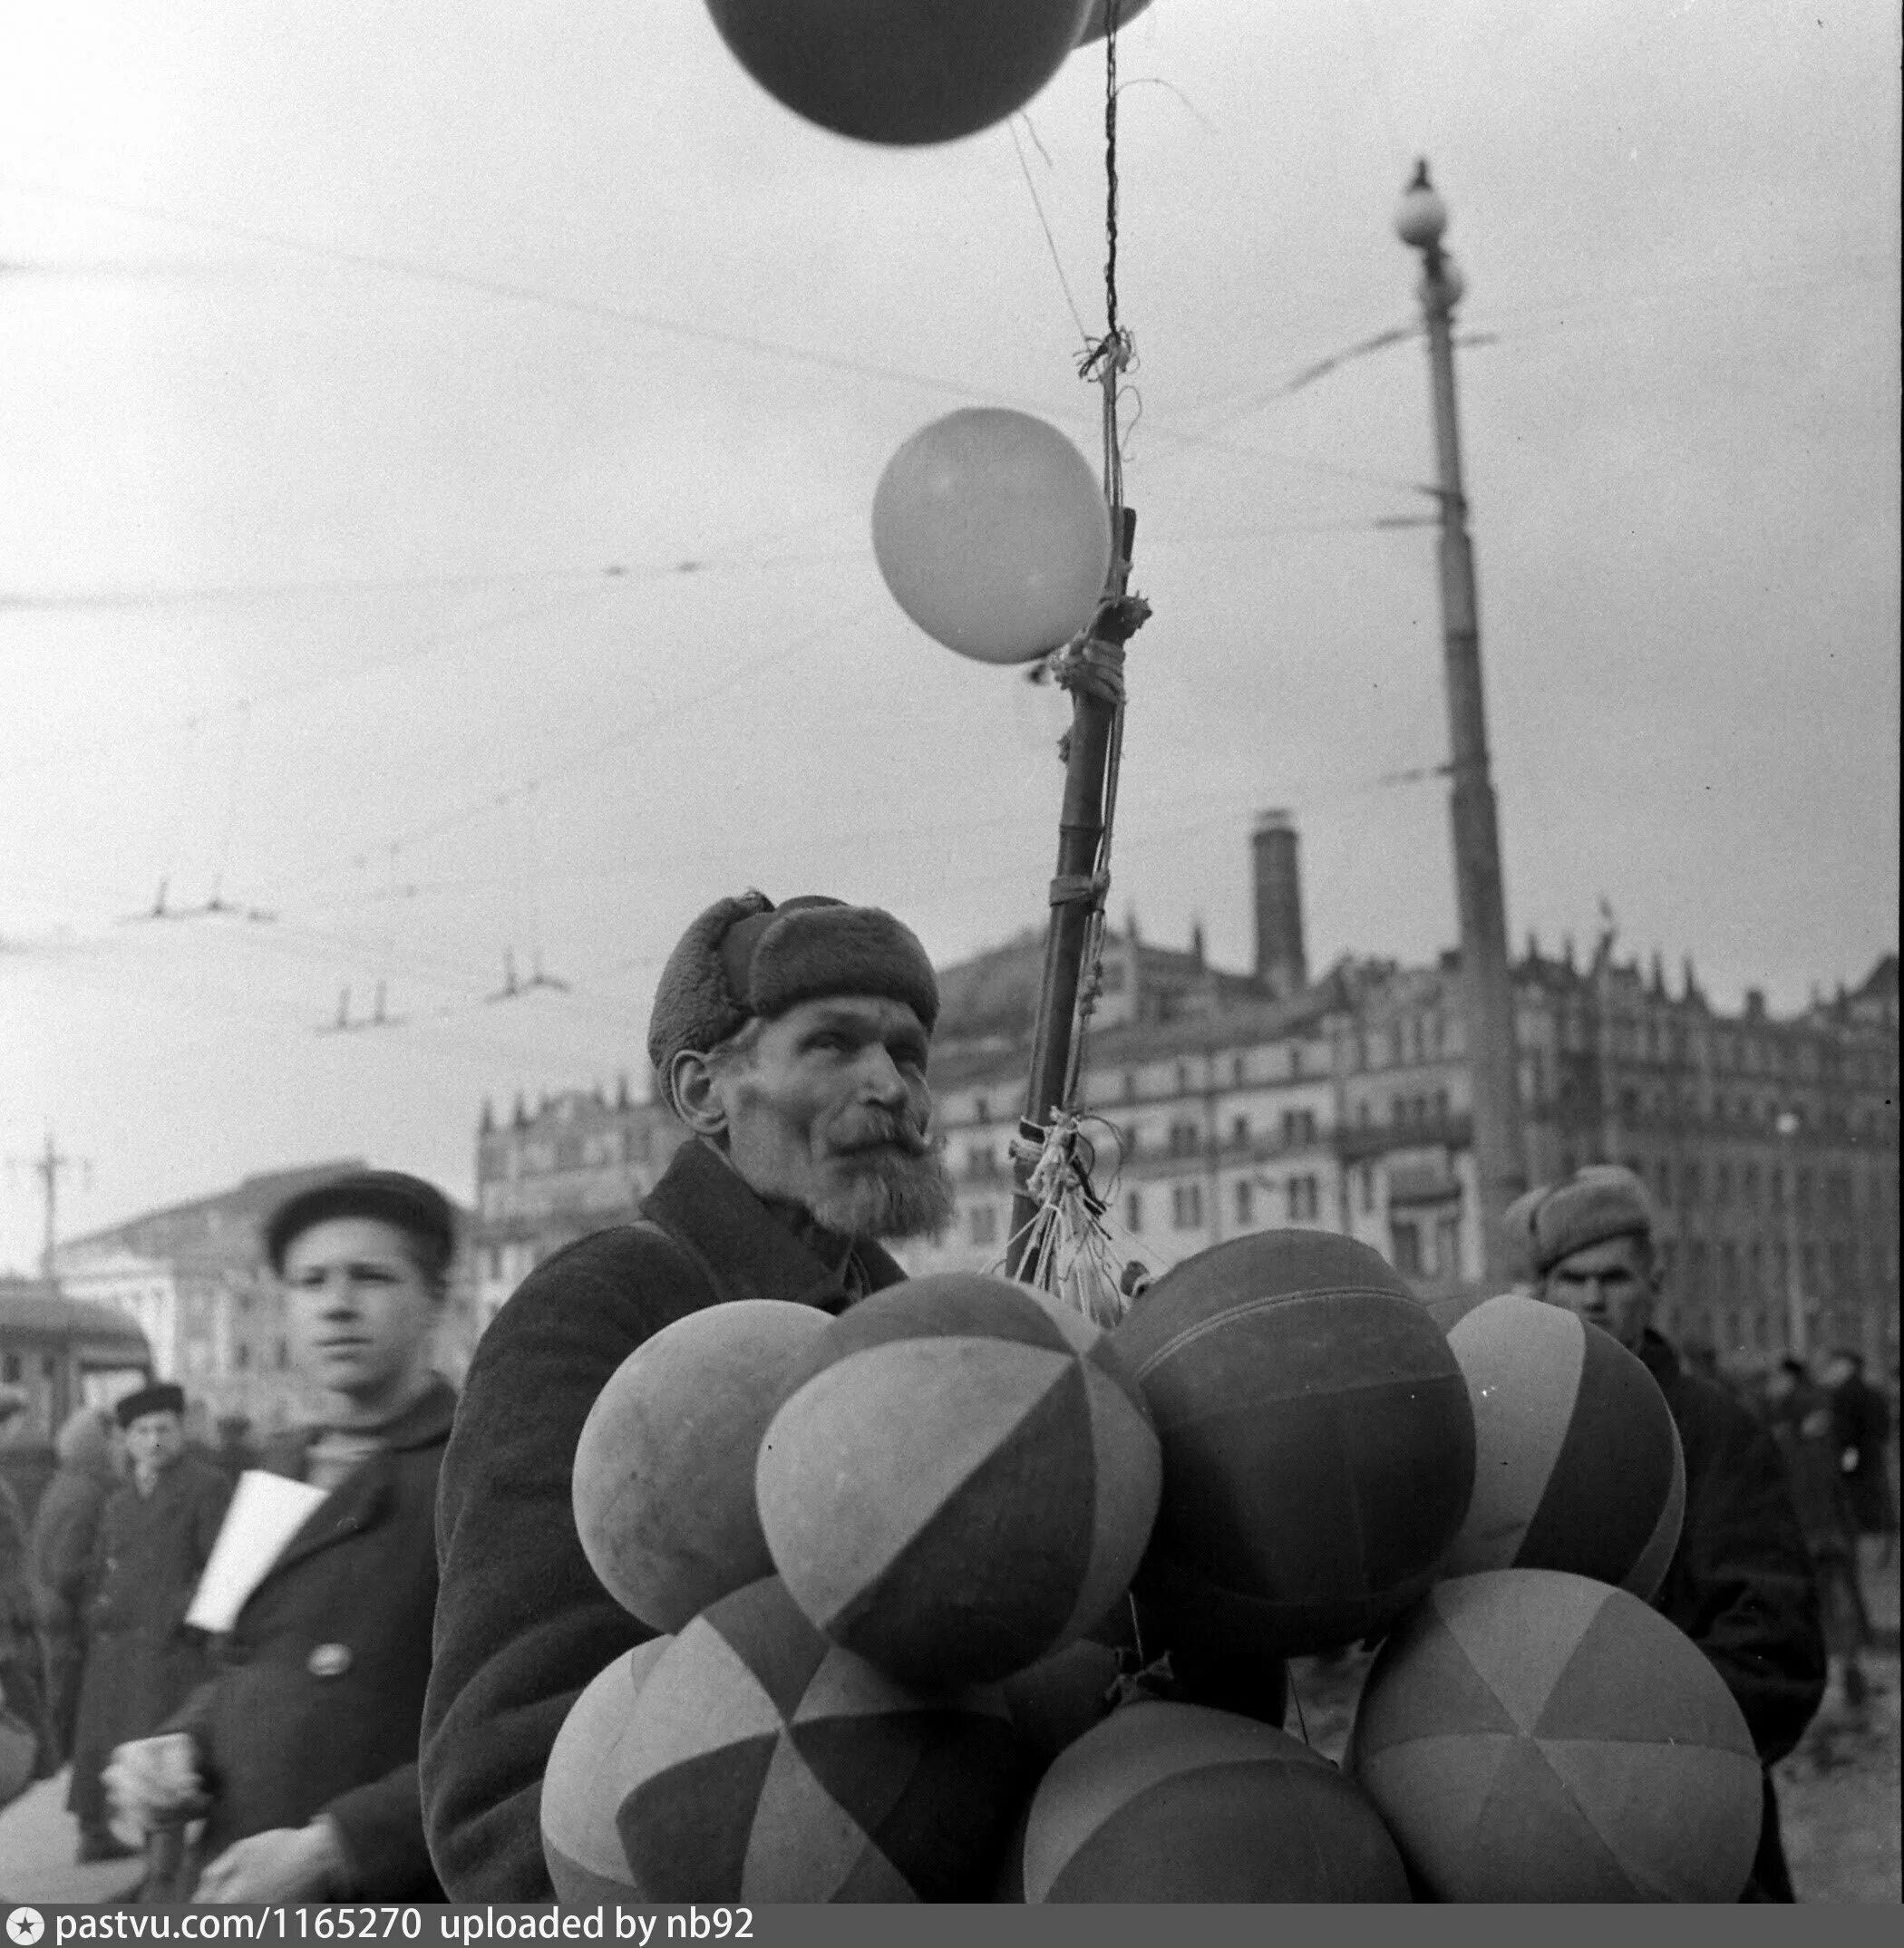 Продавец воздушные шары. Ретро шарики. Шары с ретро фото. Продавцы воздушных шаров в начале 20 века. Музей шариков в Москве.